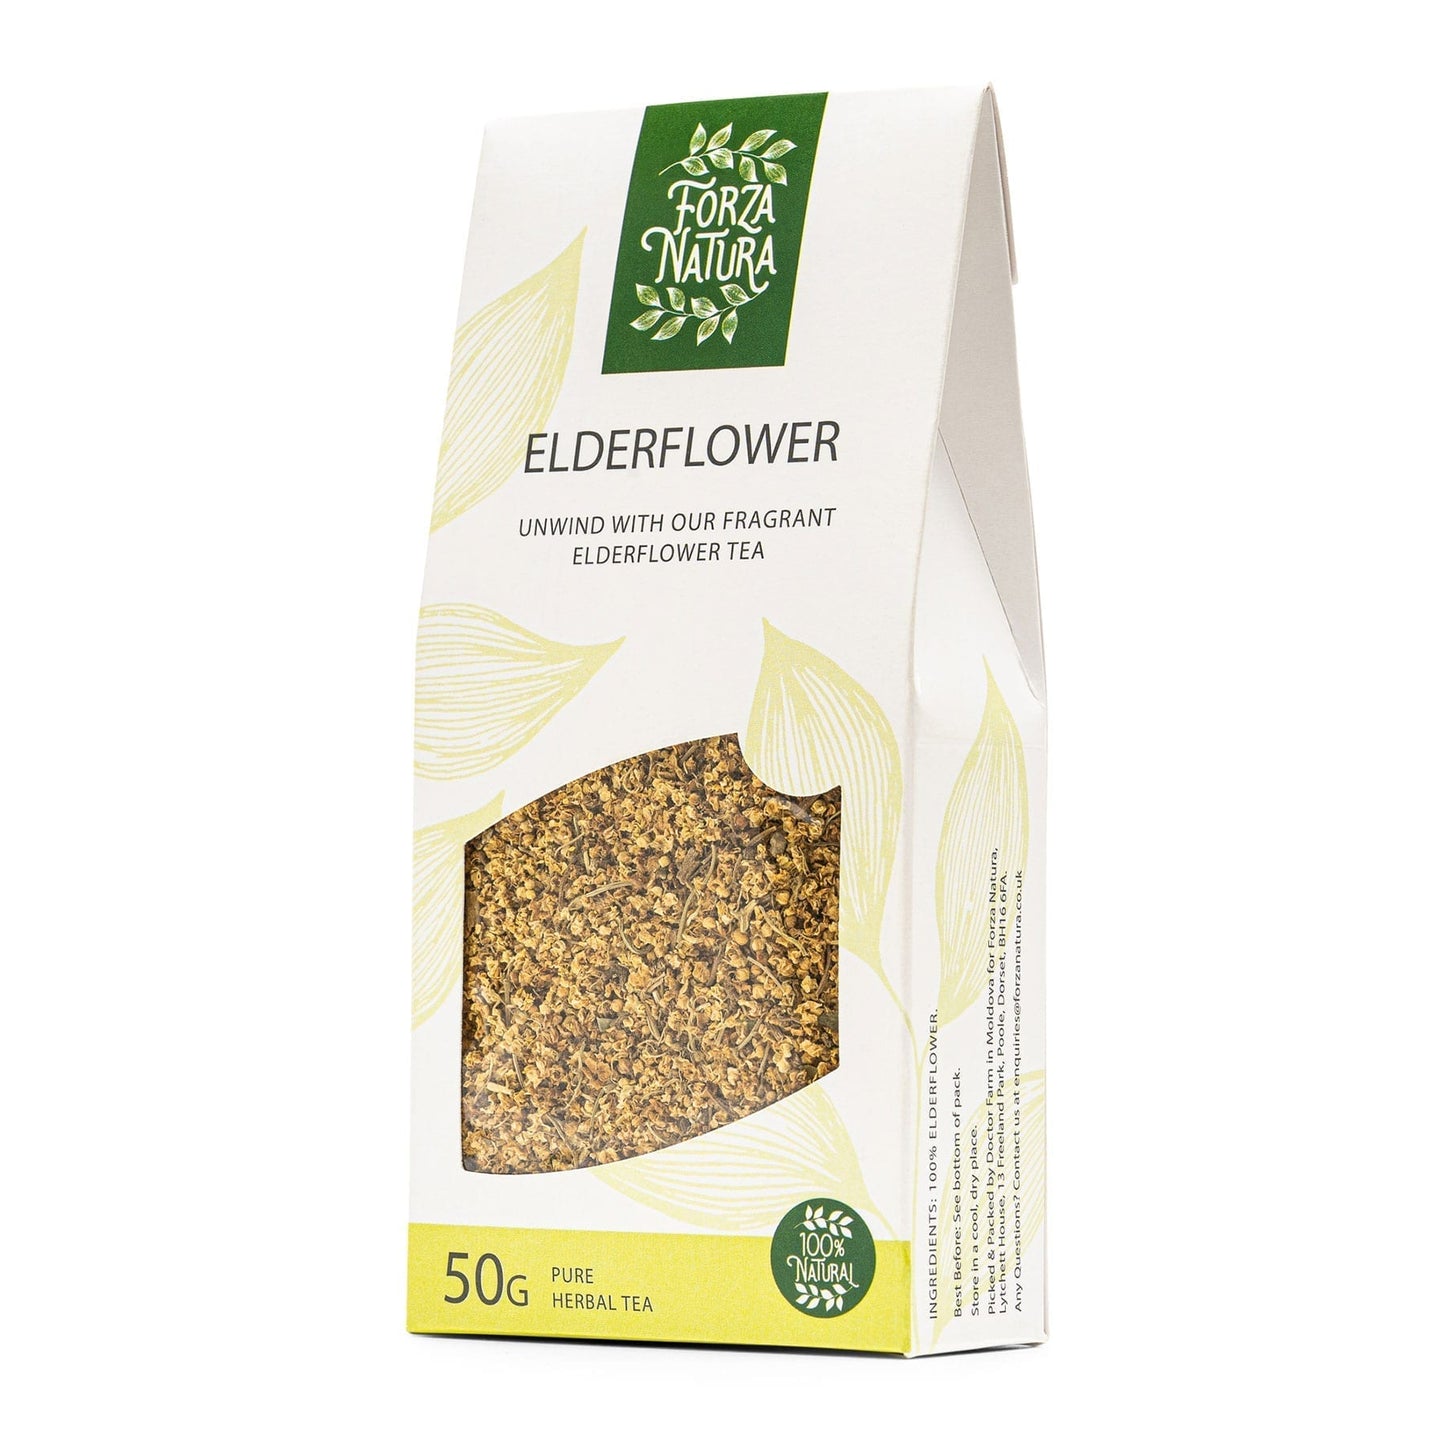 Elderflower - Loose Leaf